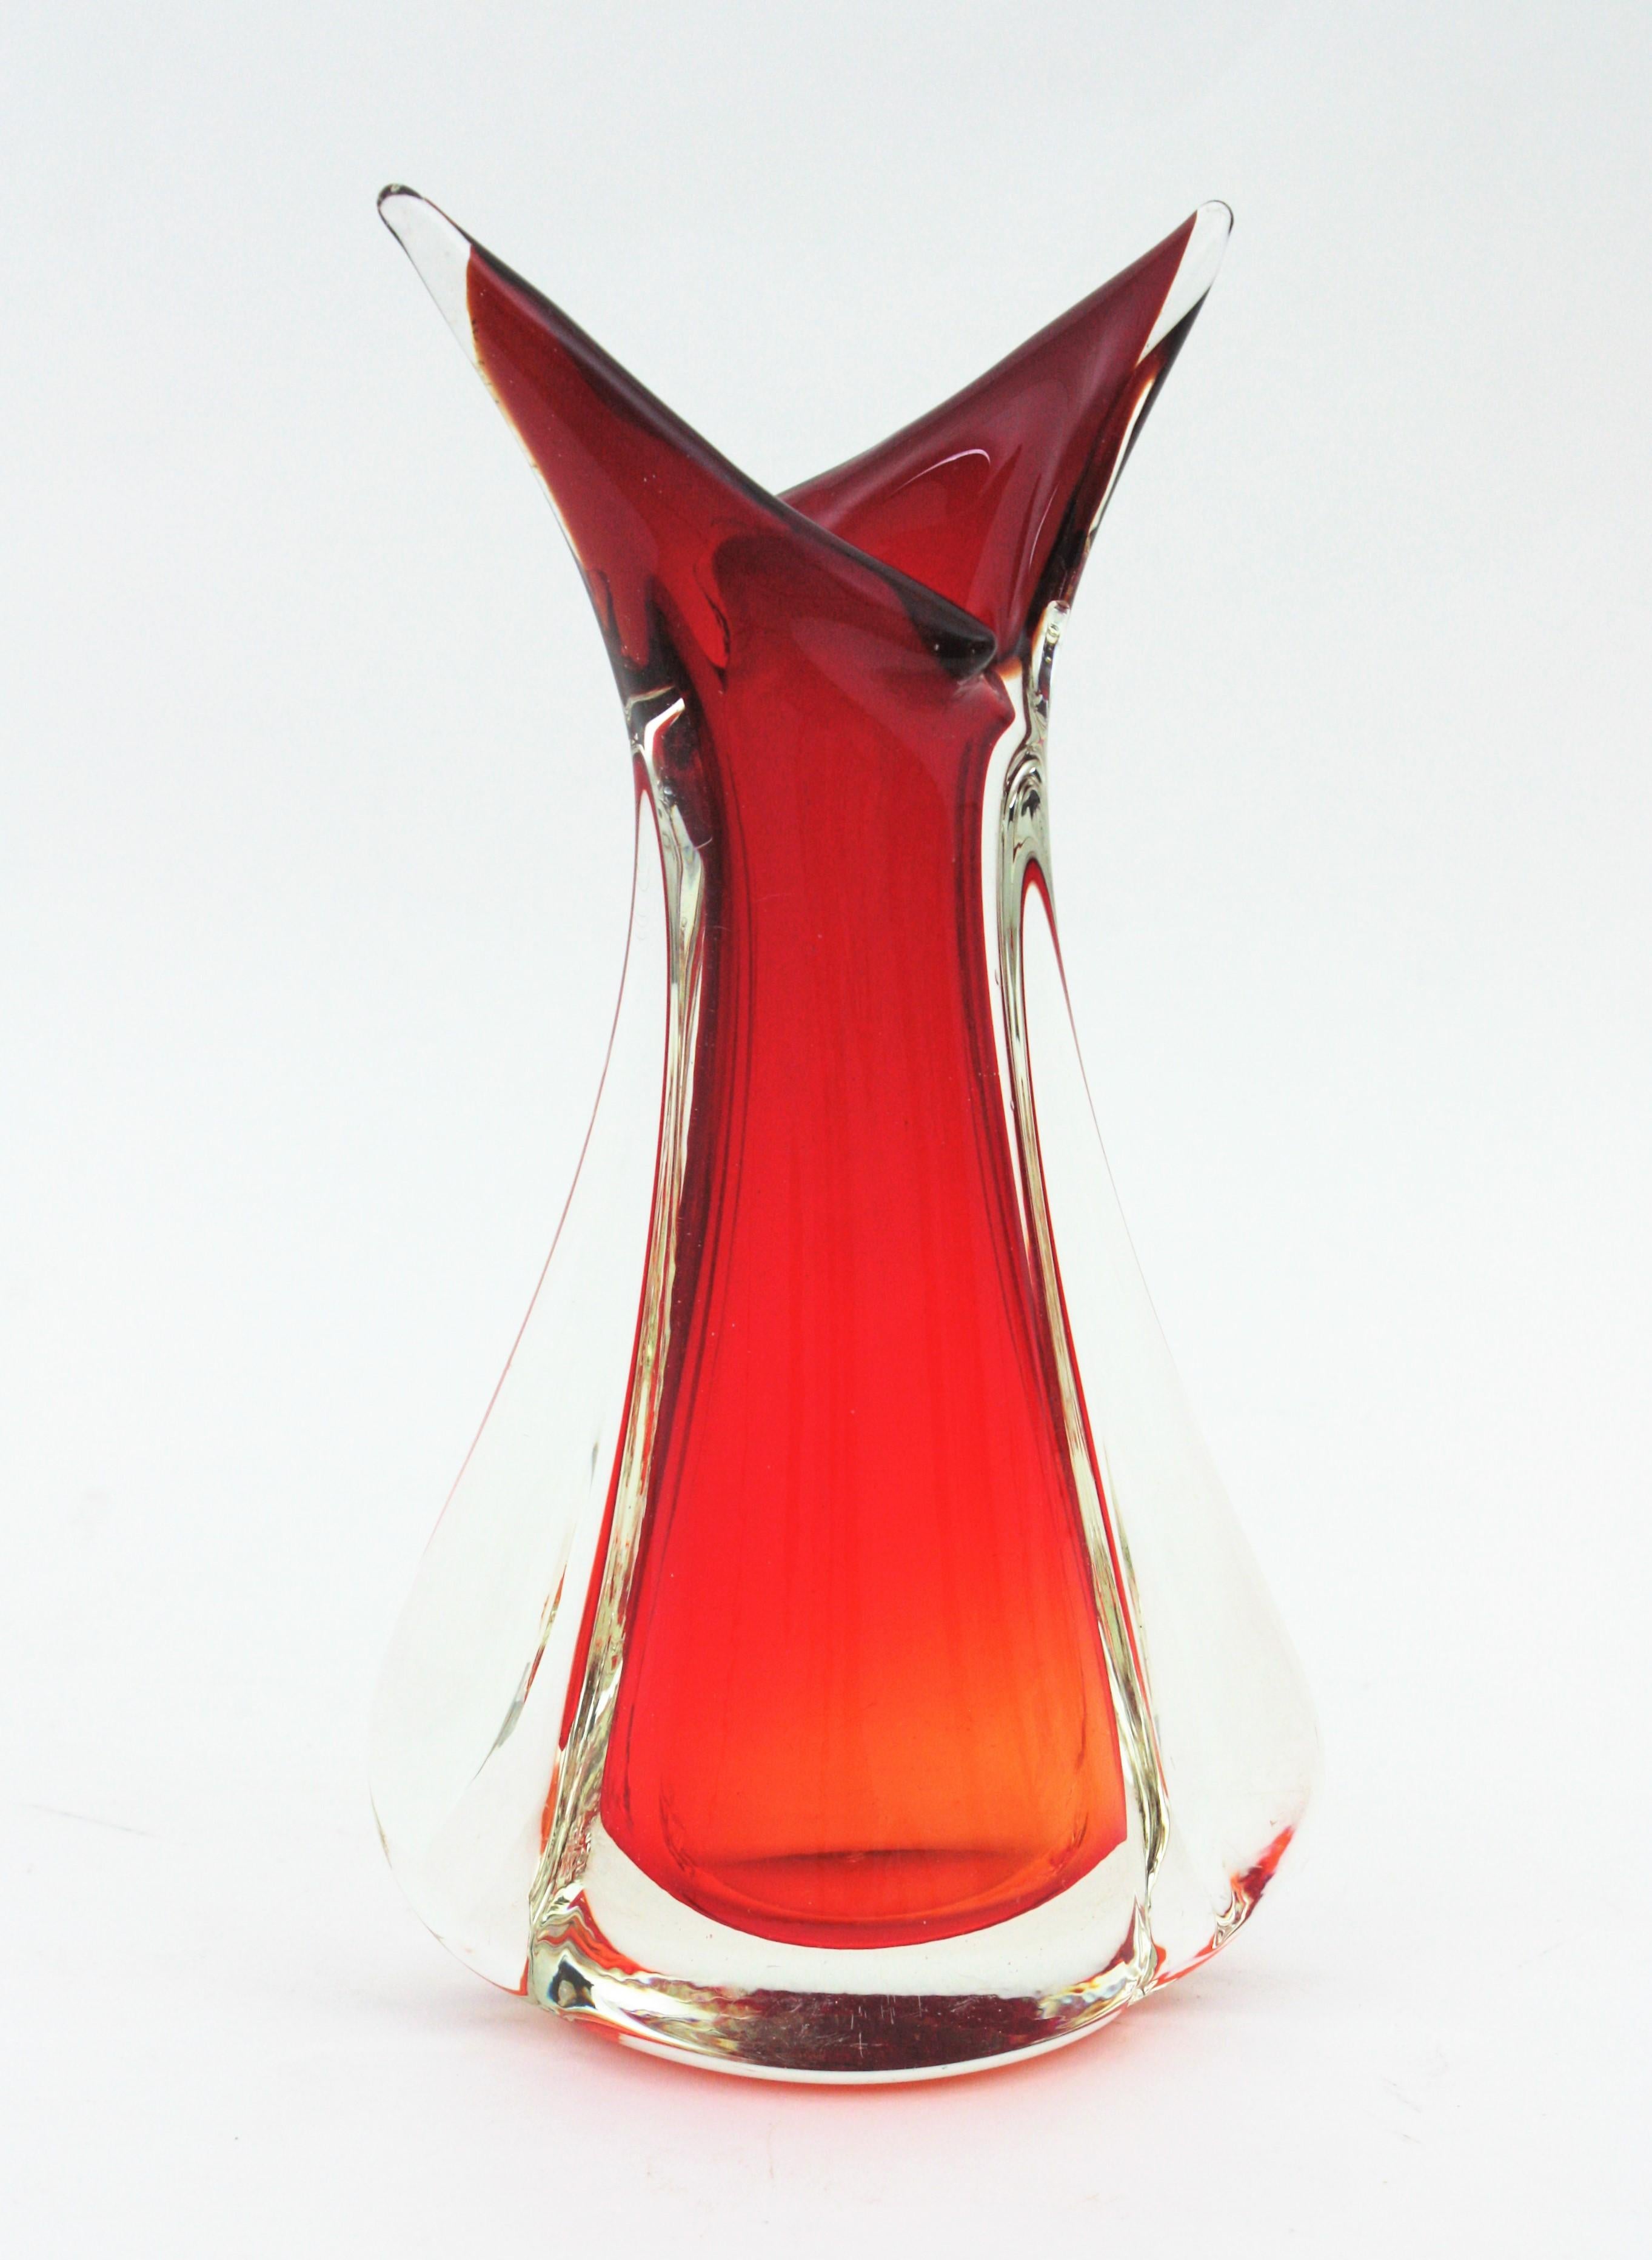 Vase sculptural en verre d'art de Murano dans les tons rouge et orange. Conçue par Flavio Poli et fabriquée par Seguso Vetri d'Arte. Italie, années 1950.
Couleurs éclatantes : Verre rouge et orange encastré dans du verre clair selon la technique